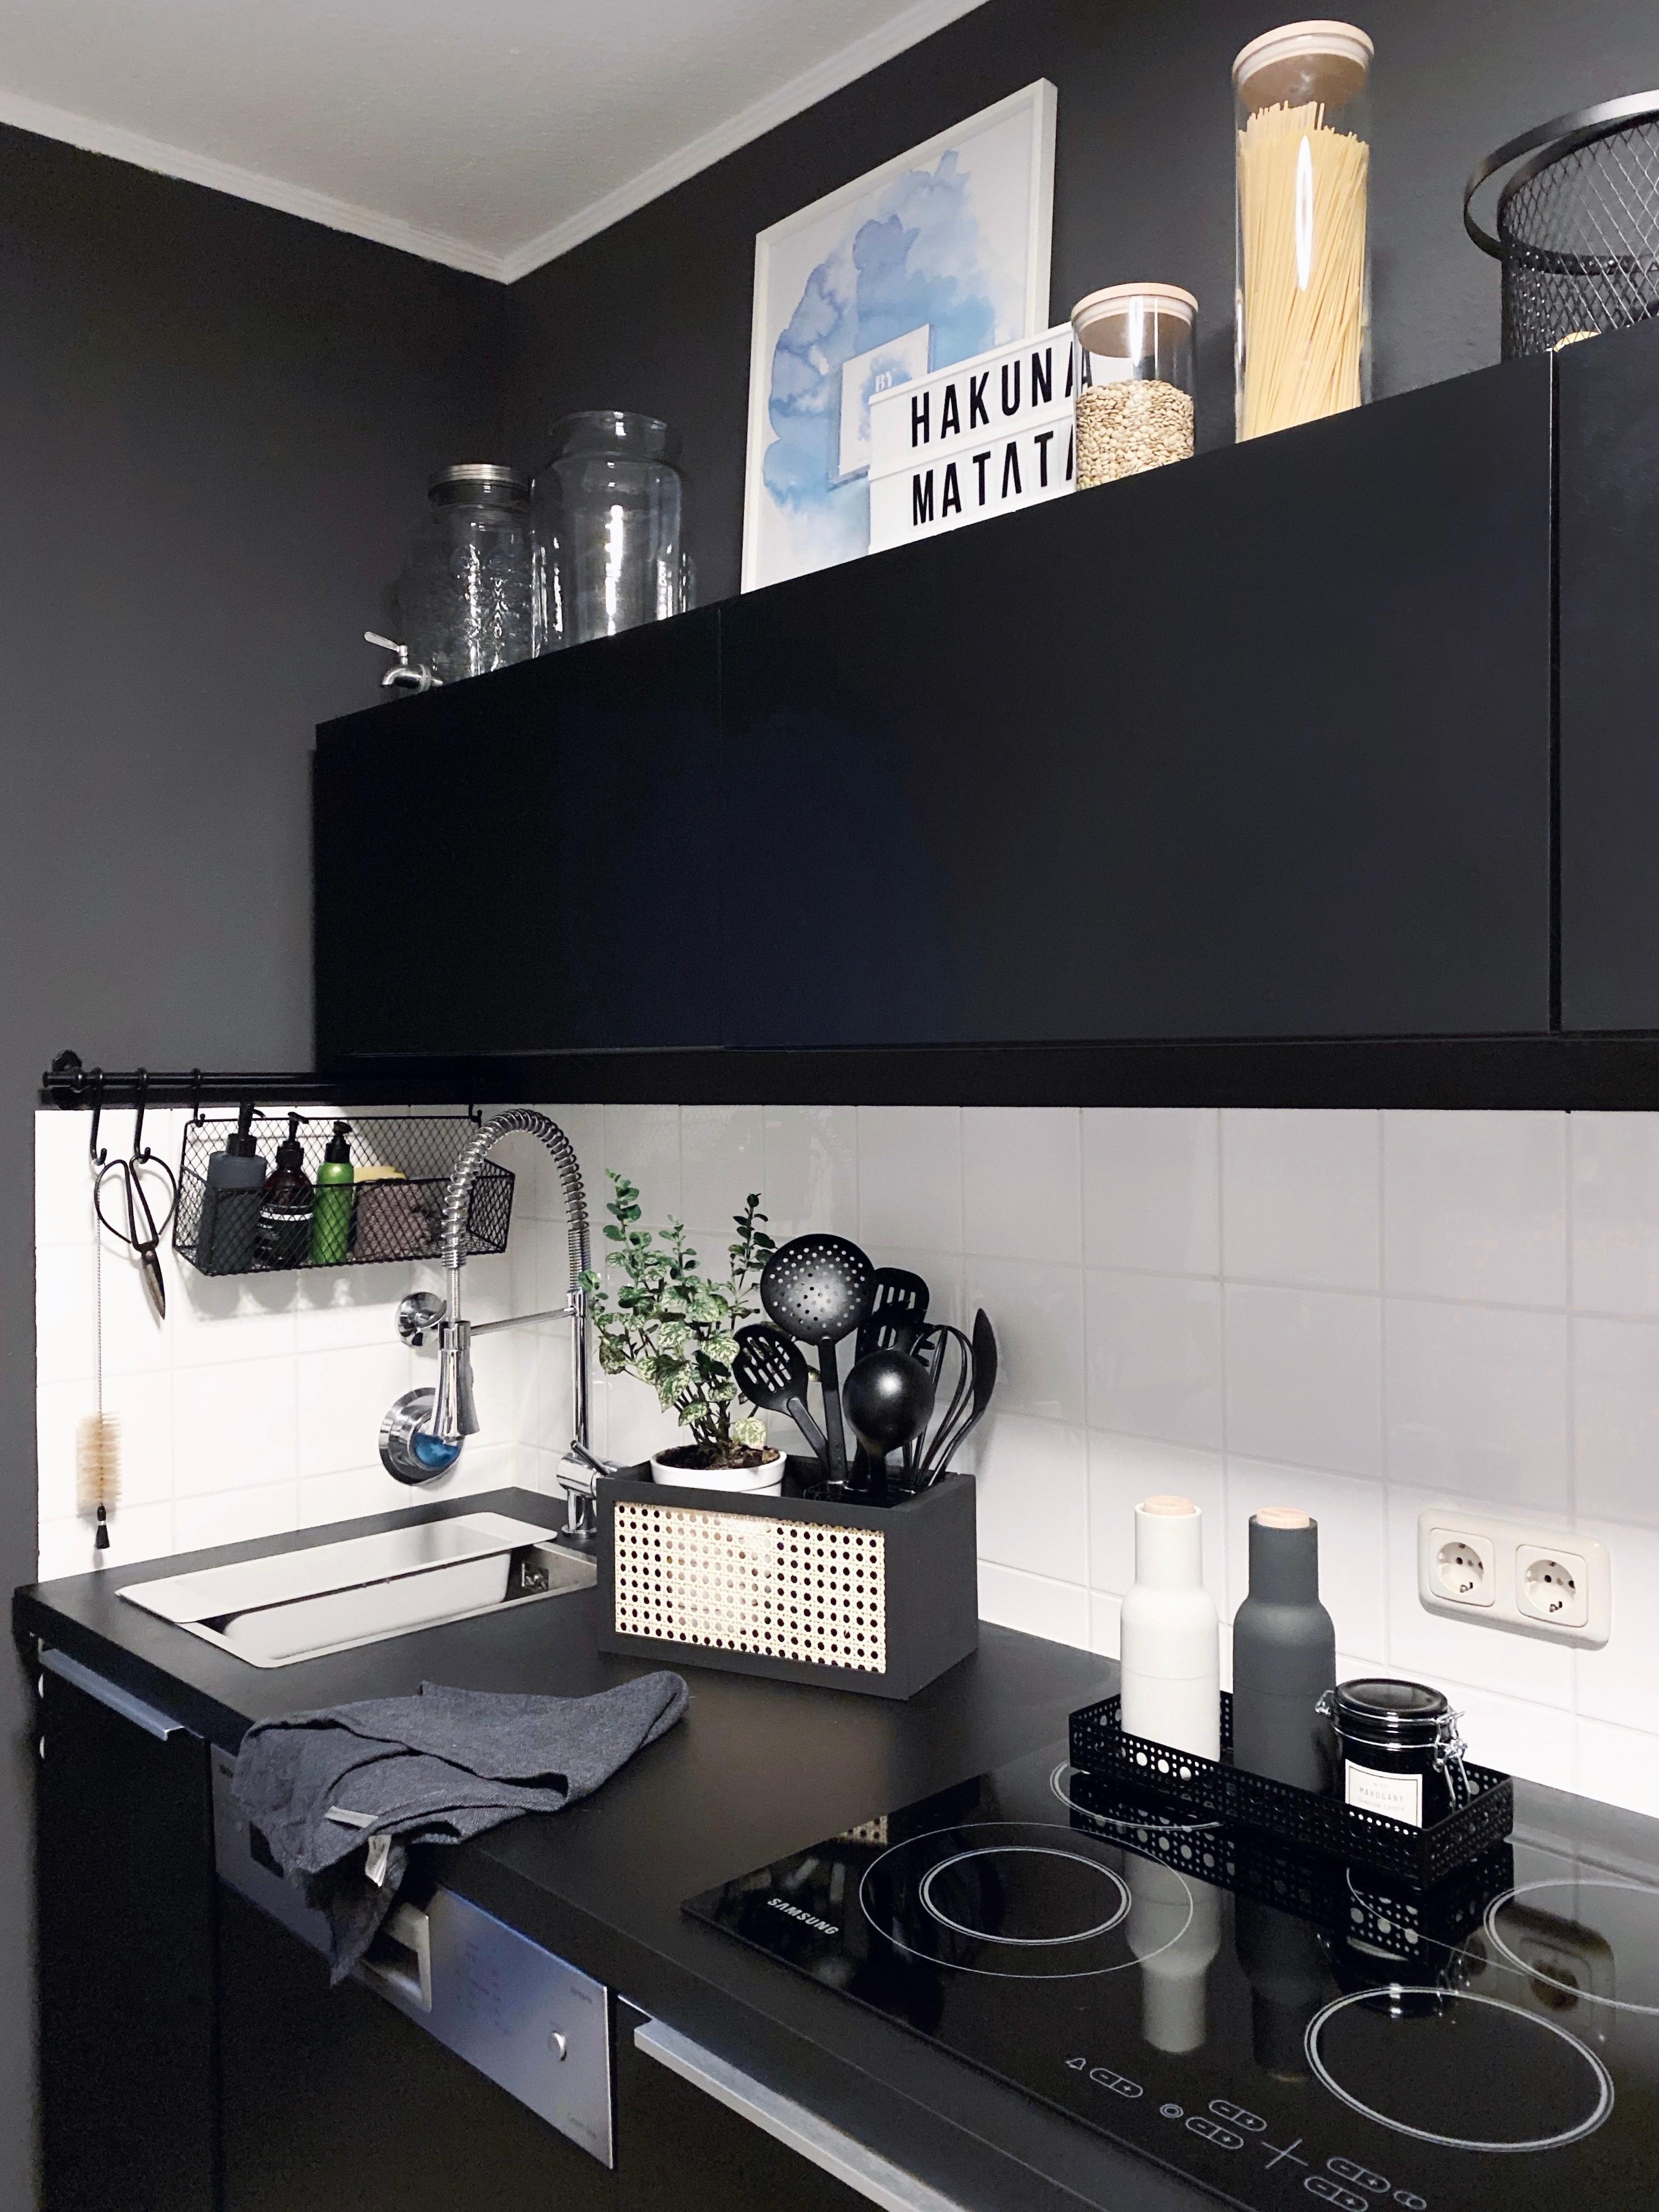 Kitchen 
#monochrome #interior #kitchen #blackandwhite #mynordicroom #mynordichome #scandinavianliving